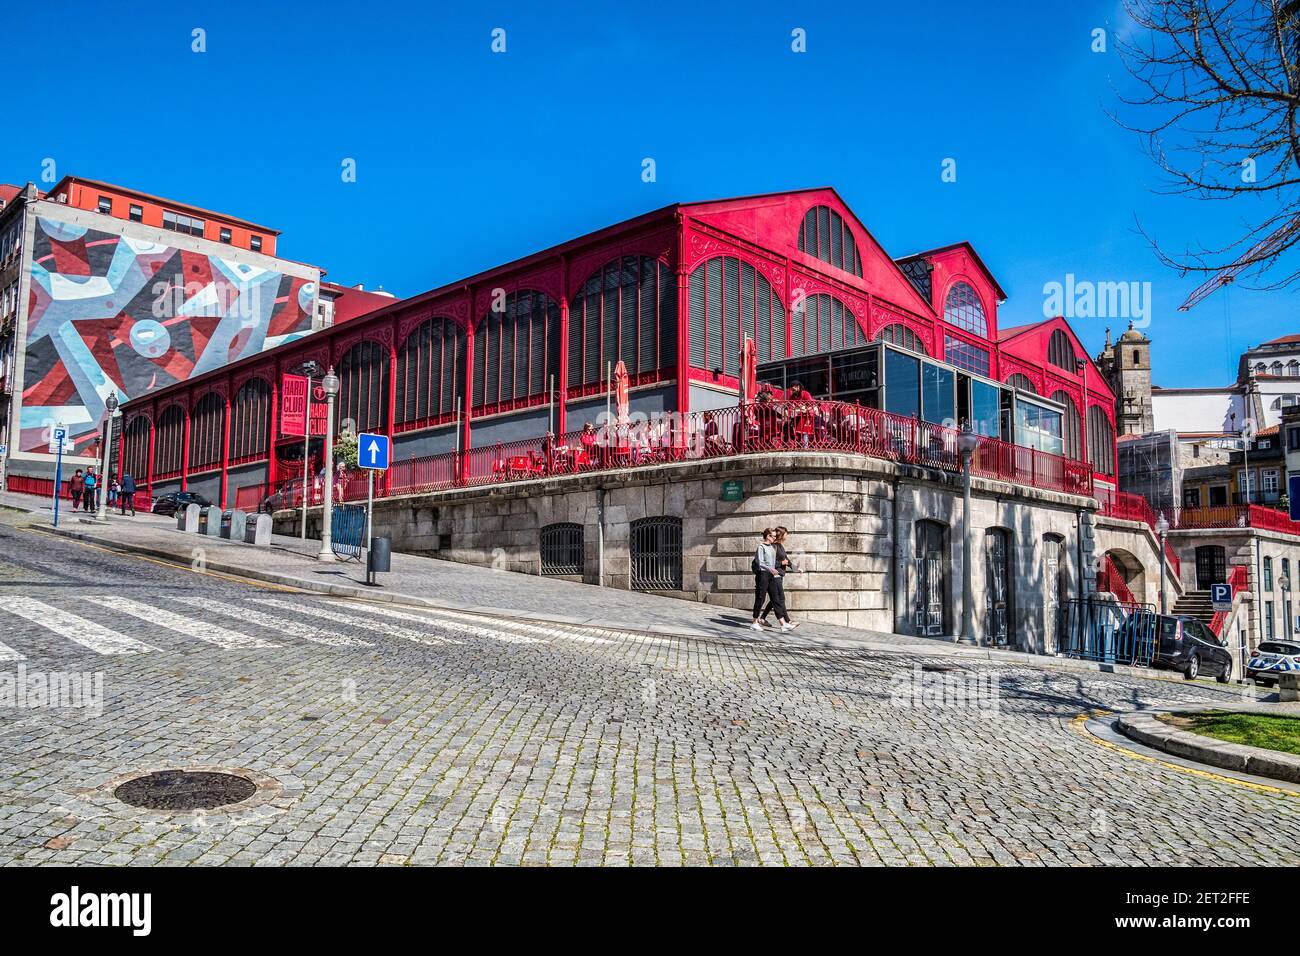 10 mars 2020: Porto, Portugal - le Mercado Ferreira Borges, une salle de marché construite dans les années 1880 à Porto, aujourd'hui une discothèque et un restaurant. Banque D'Images